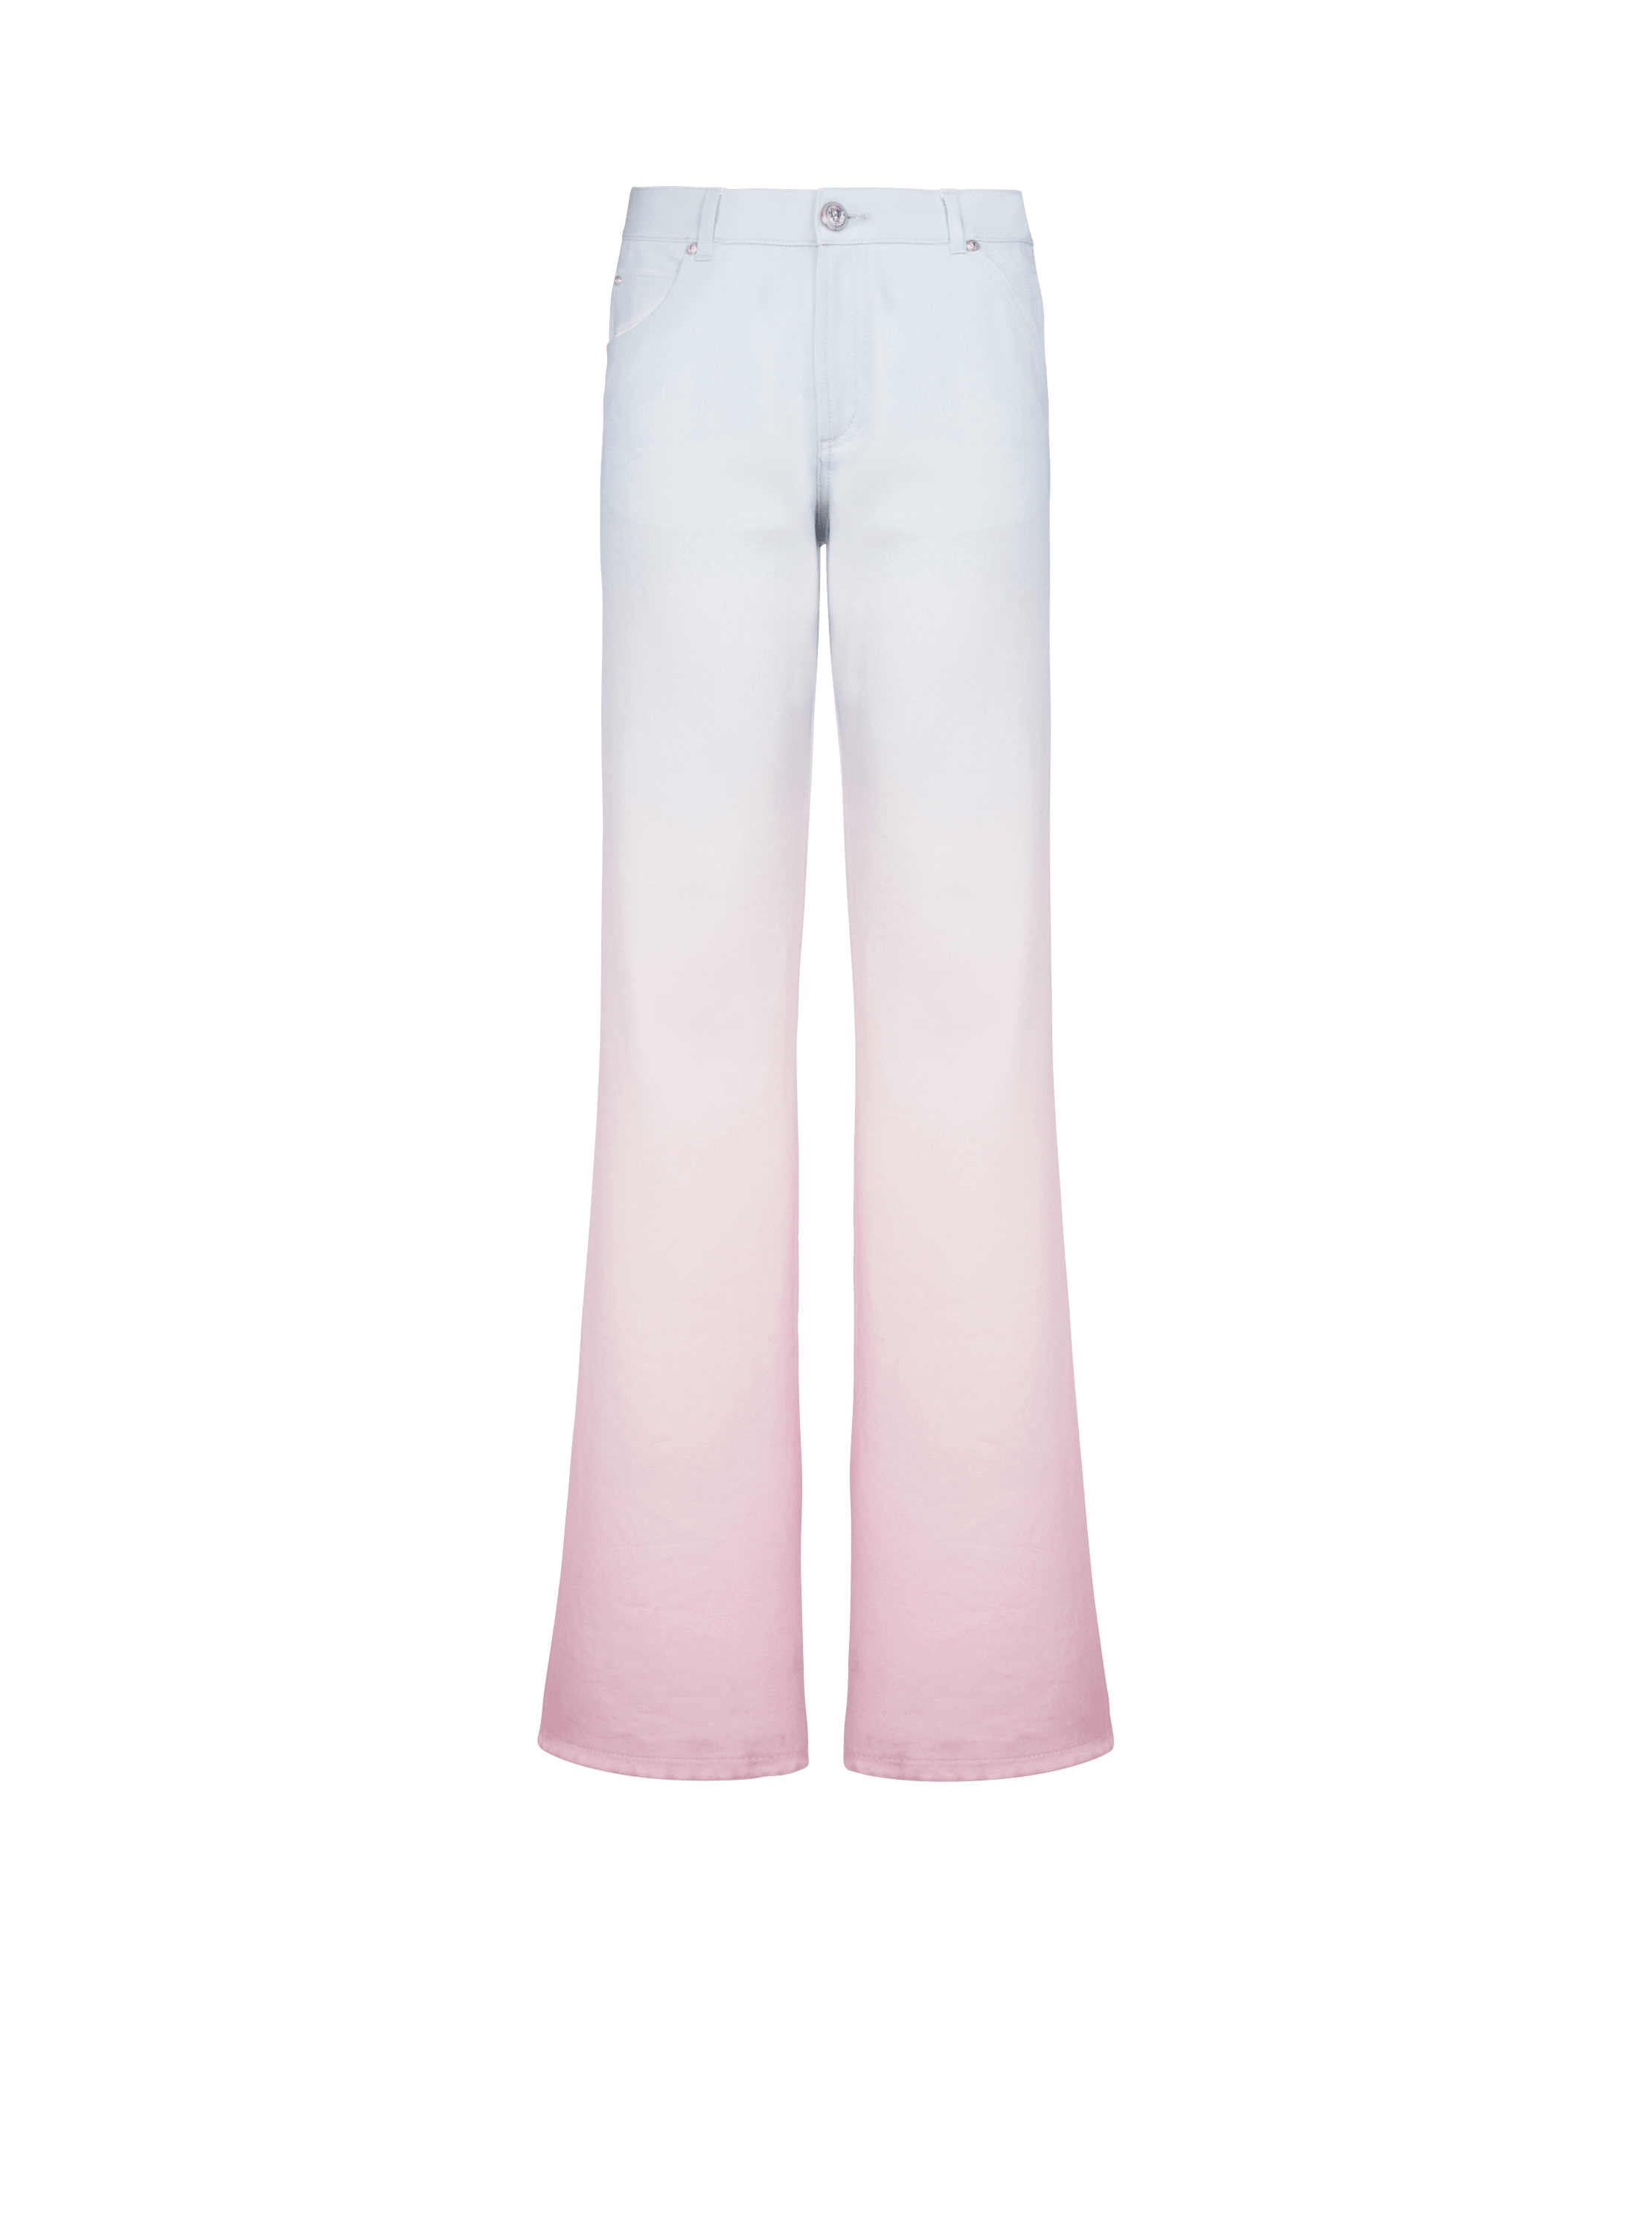 Balmain x Evian - Jeans grandes, multicolor, hi-res